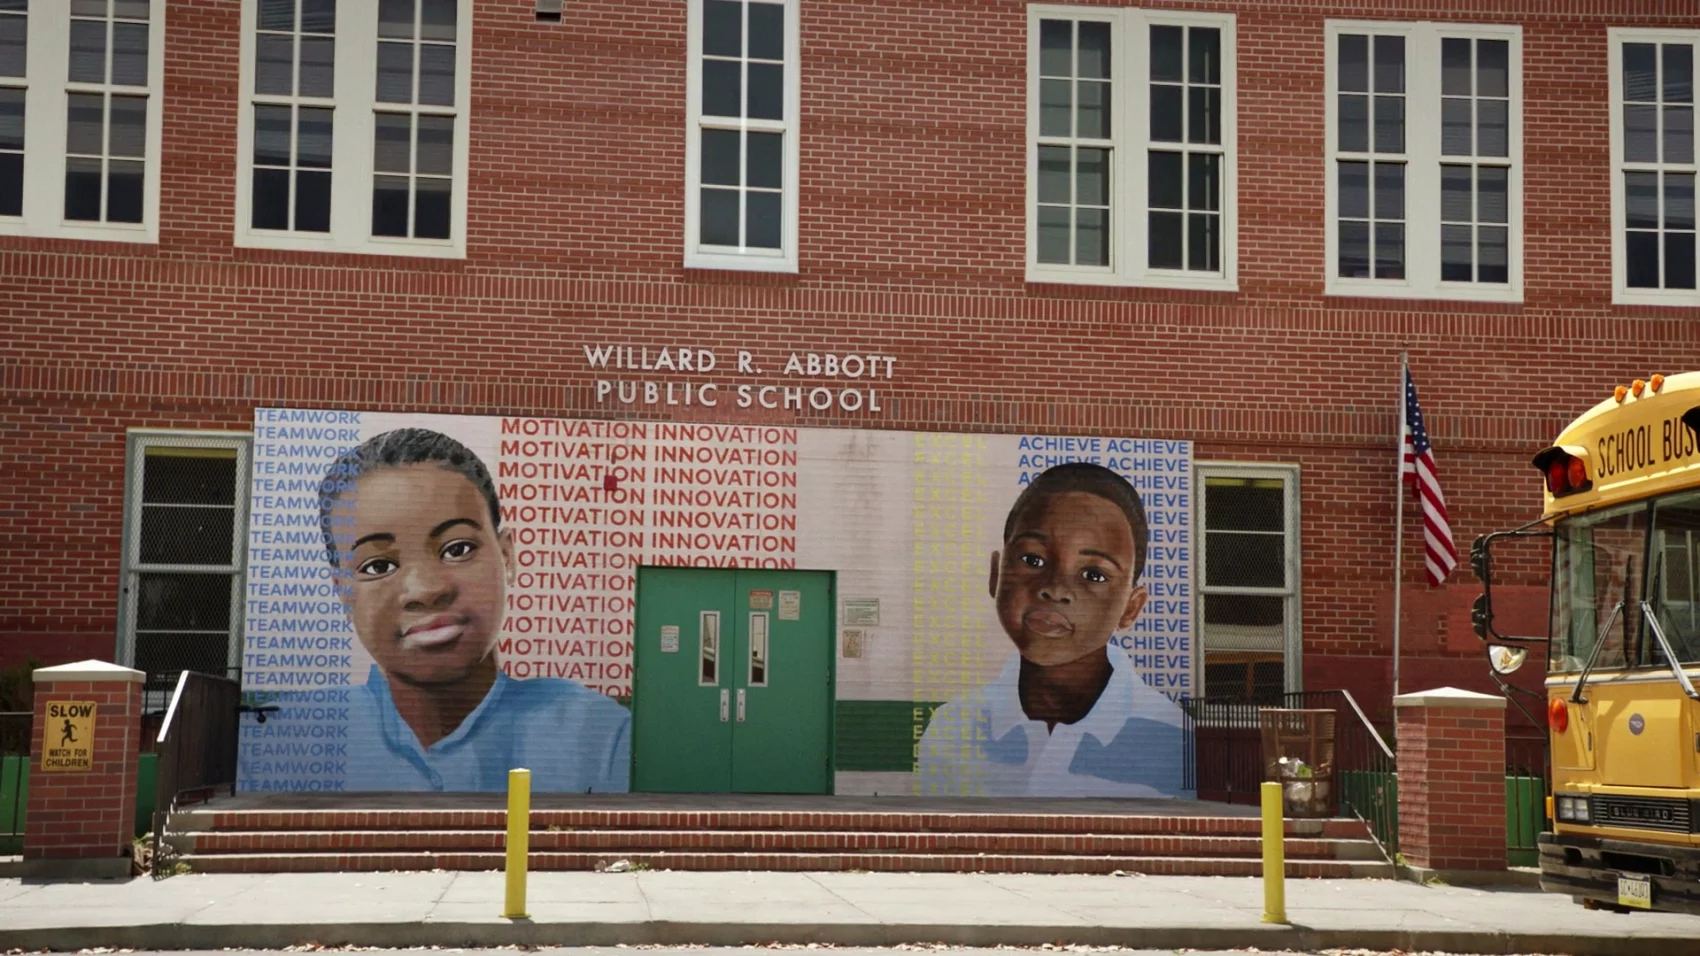 Muro da escola Abbott Elementary. É uma parede de tijolos que possui uma porta verde e um mural onde se vê o desenho de dois estudantes negros. Lê-se "Willard R. Abbott Public School". 